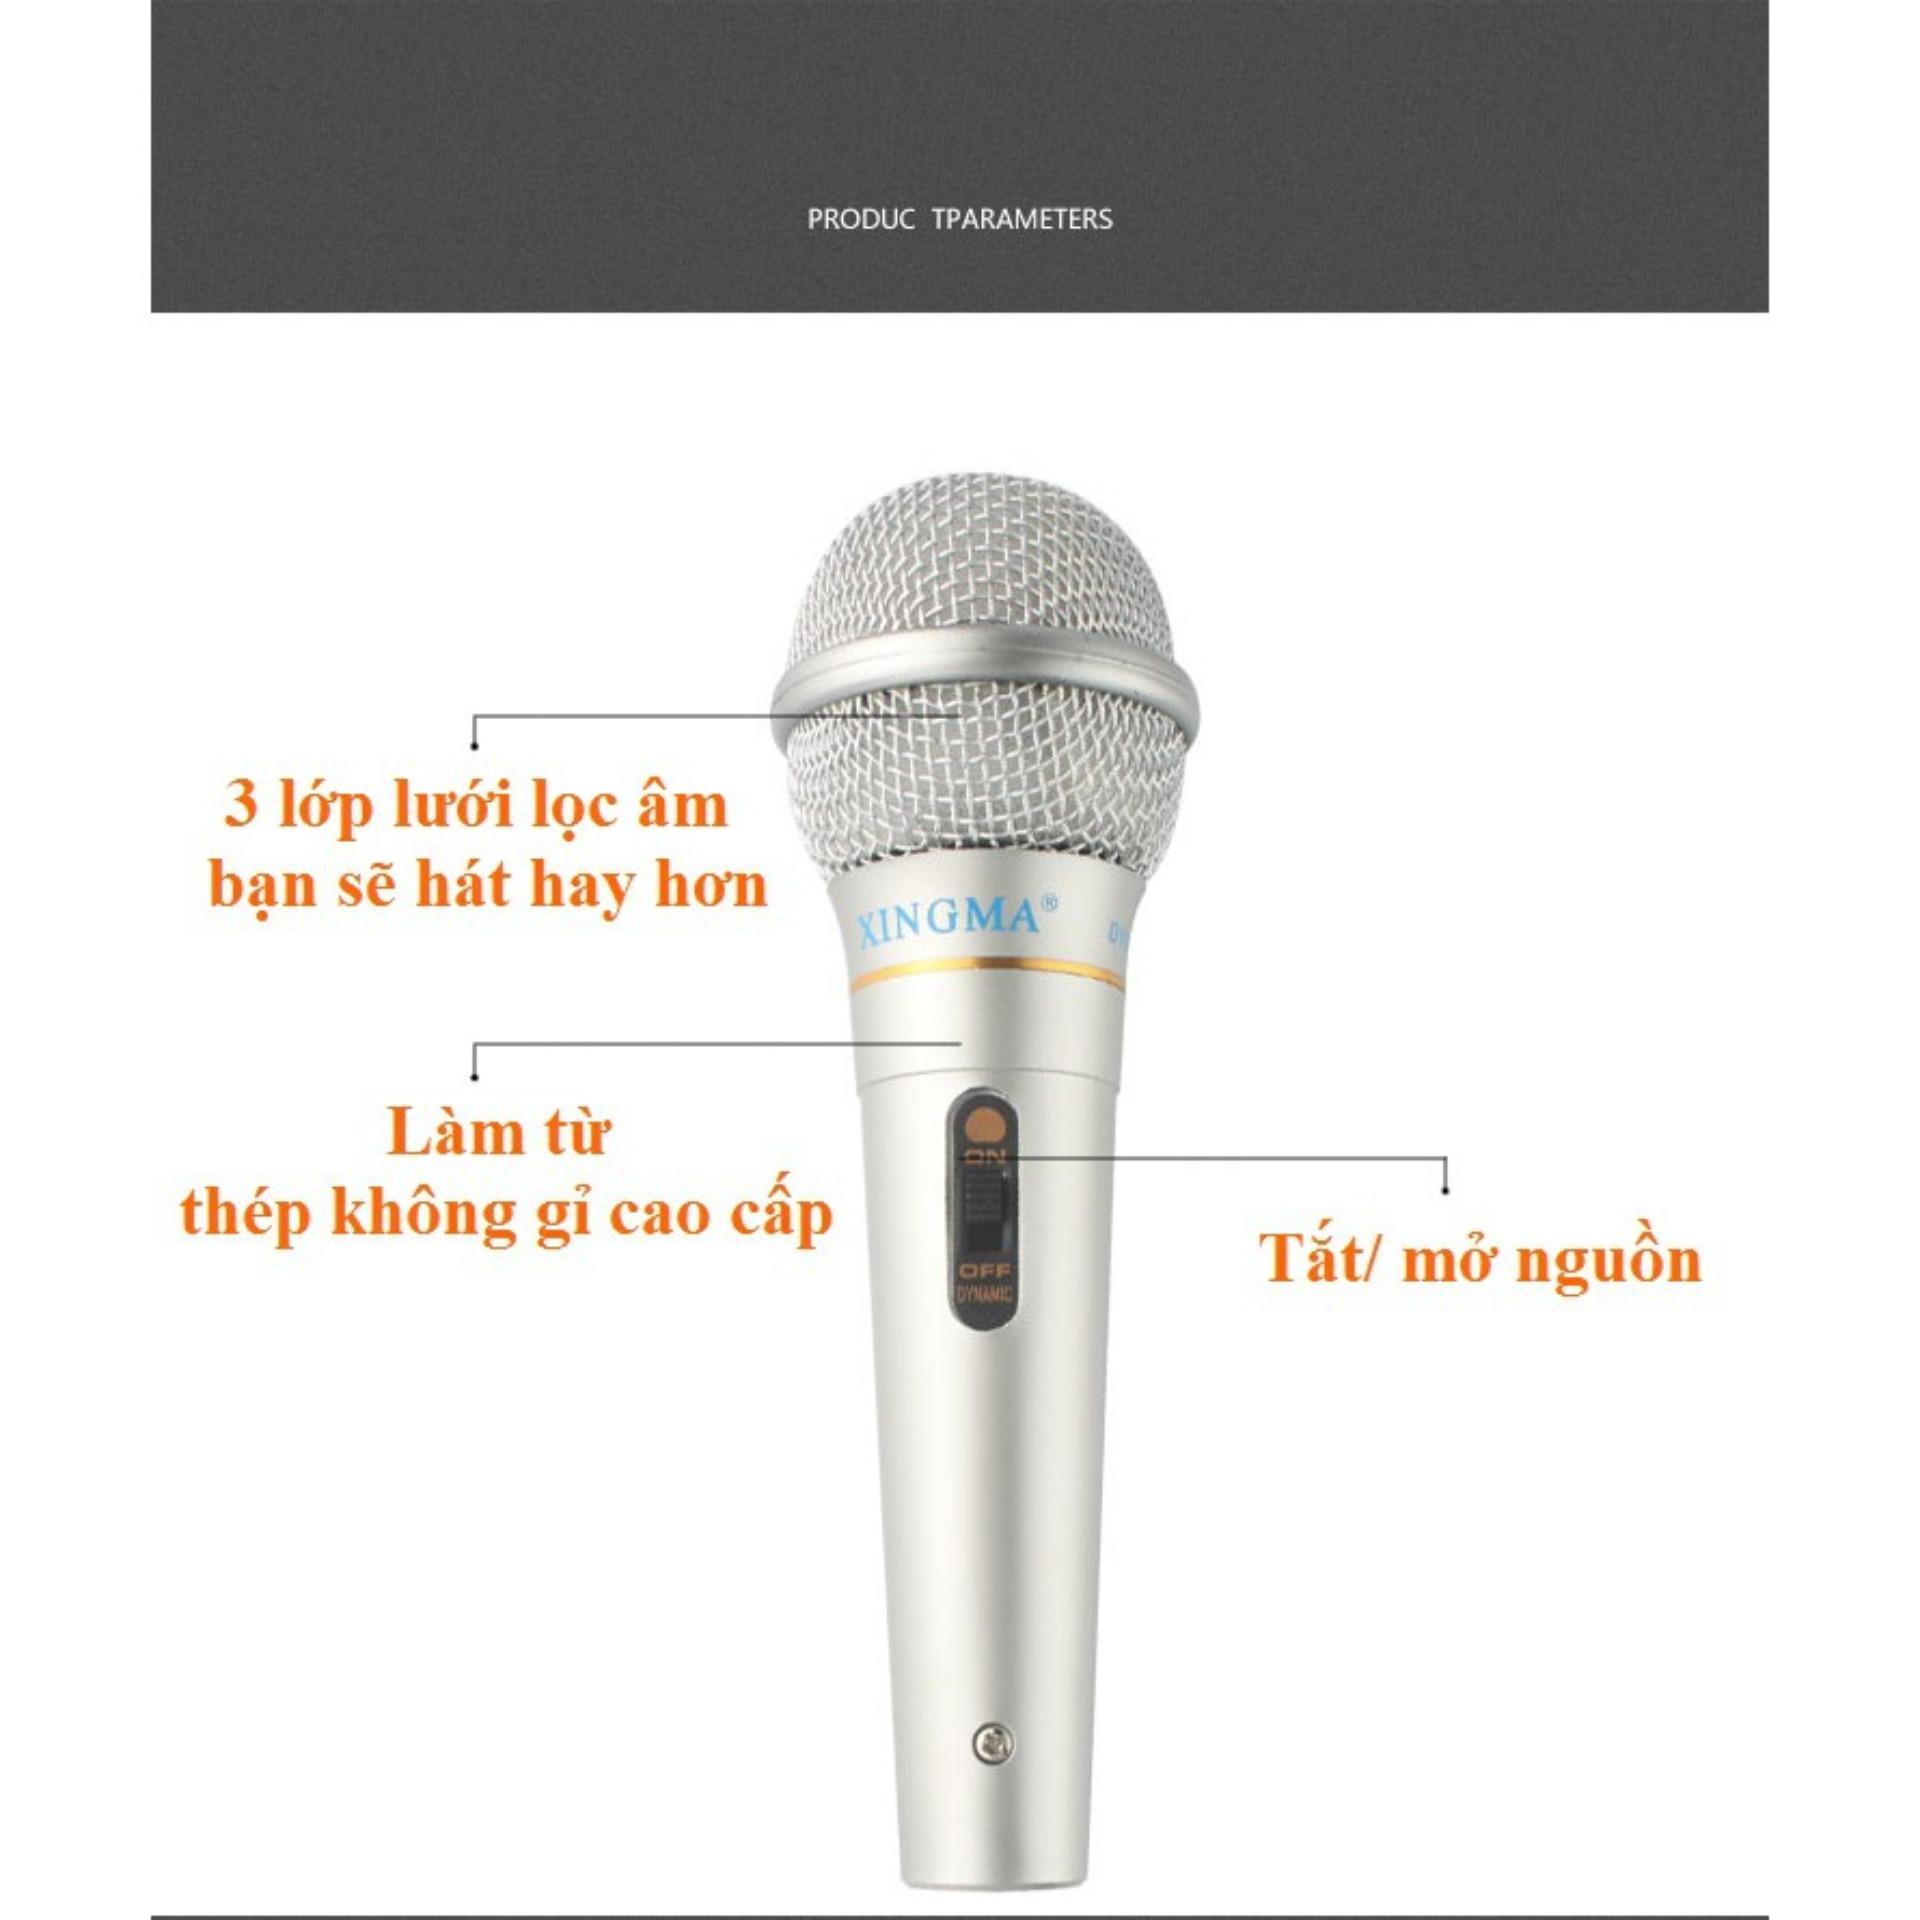 Giá micro không dây -Micro karaoke XINGMA AK 319 - chất lượng âm thanh tuyệt vời  - hàng cao cấp - giá rẻ - uy tín